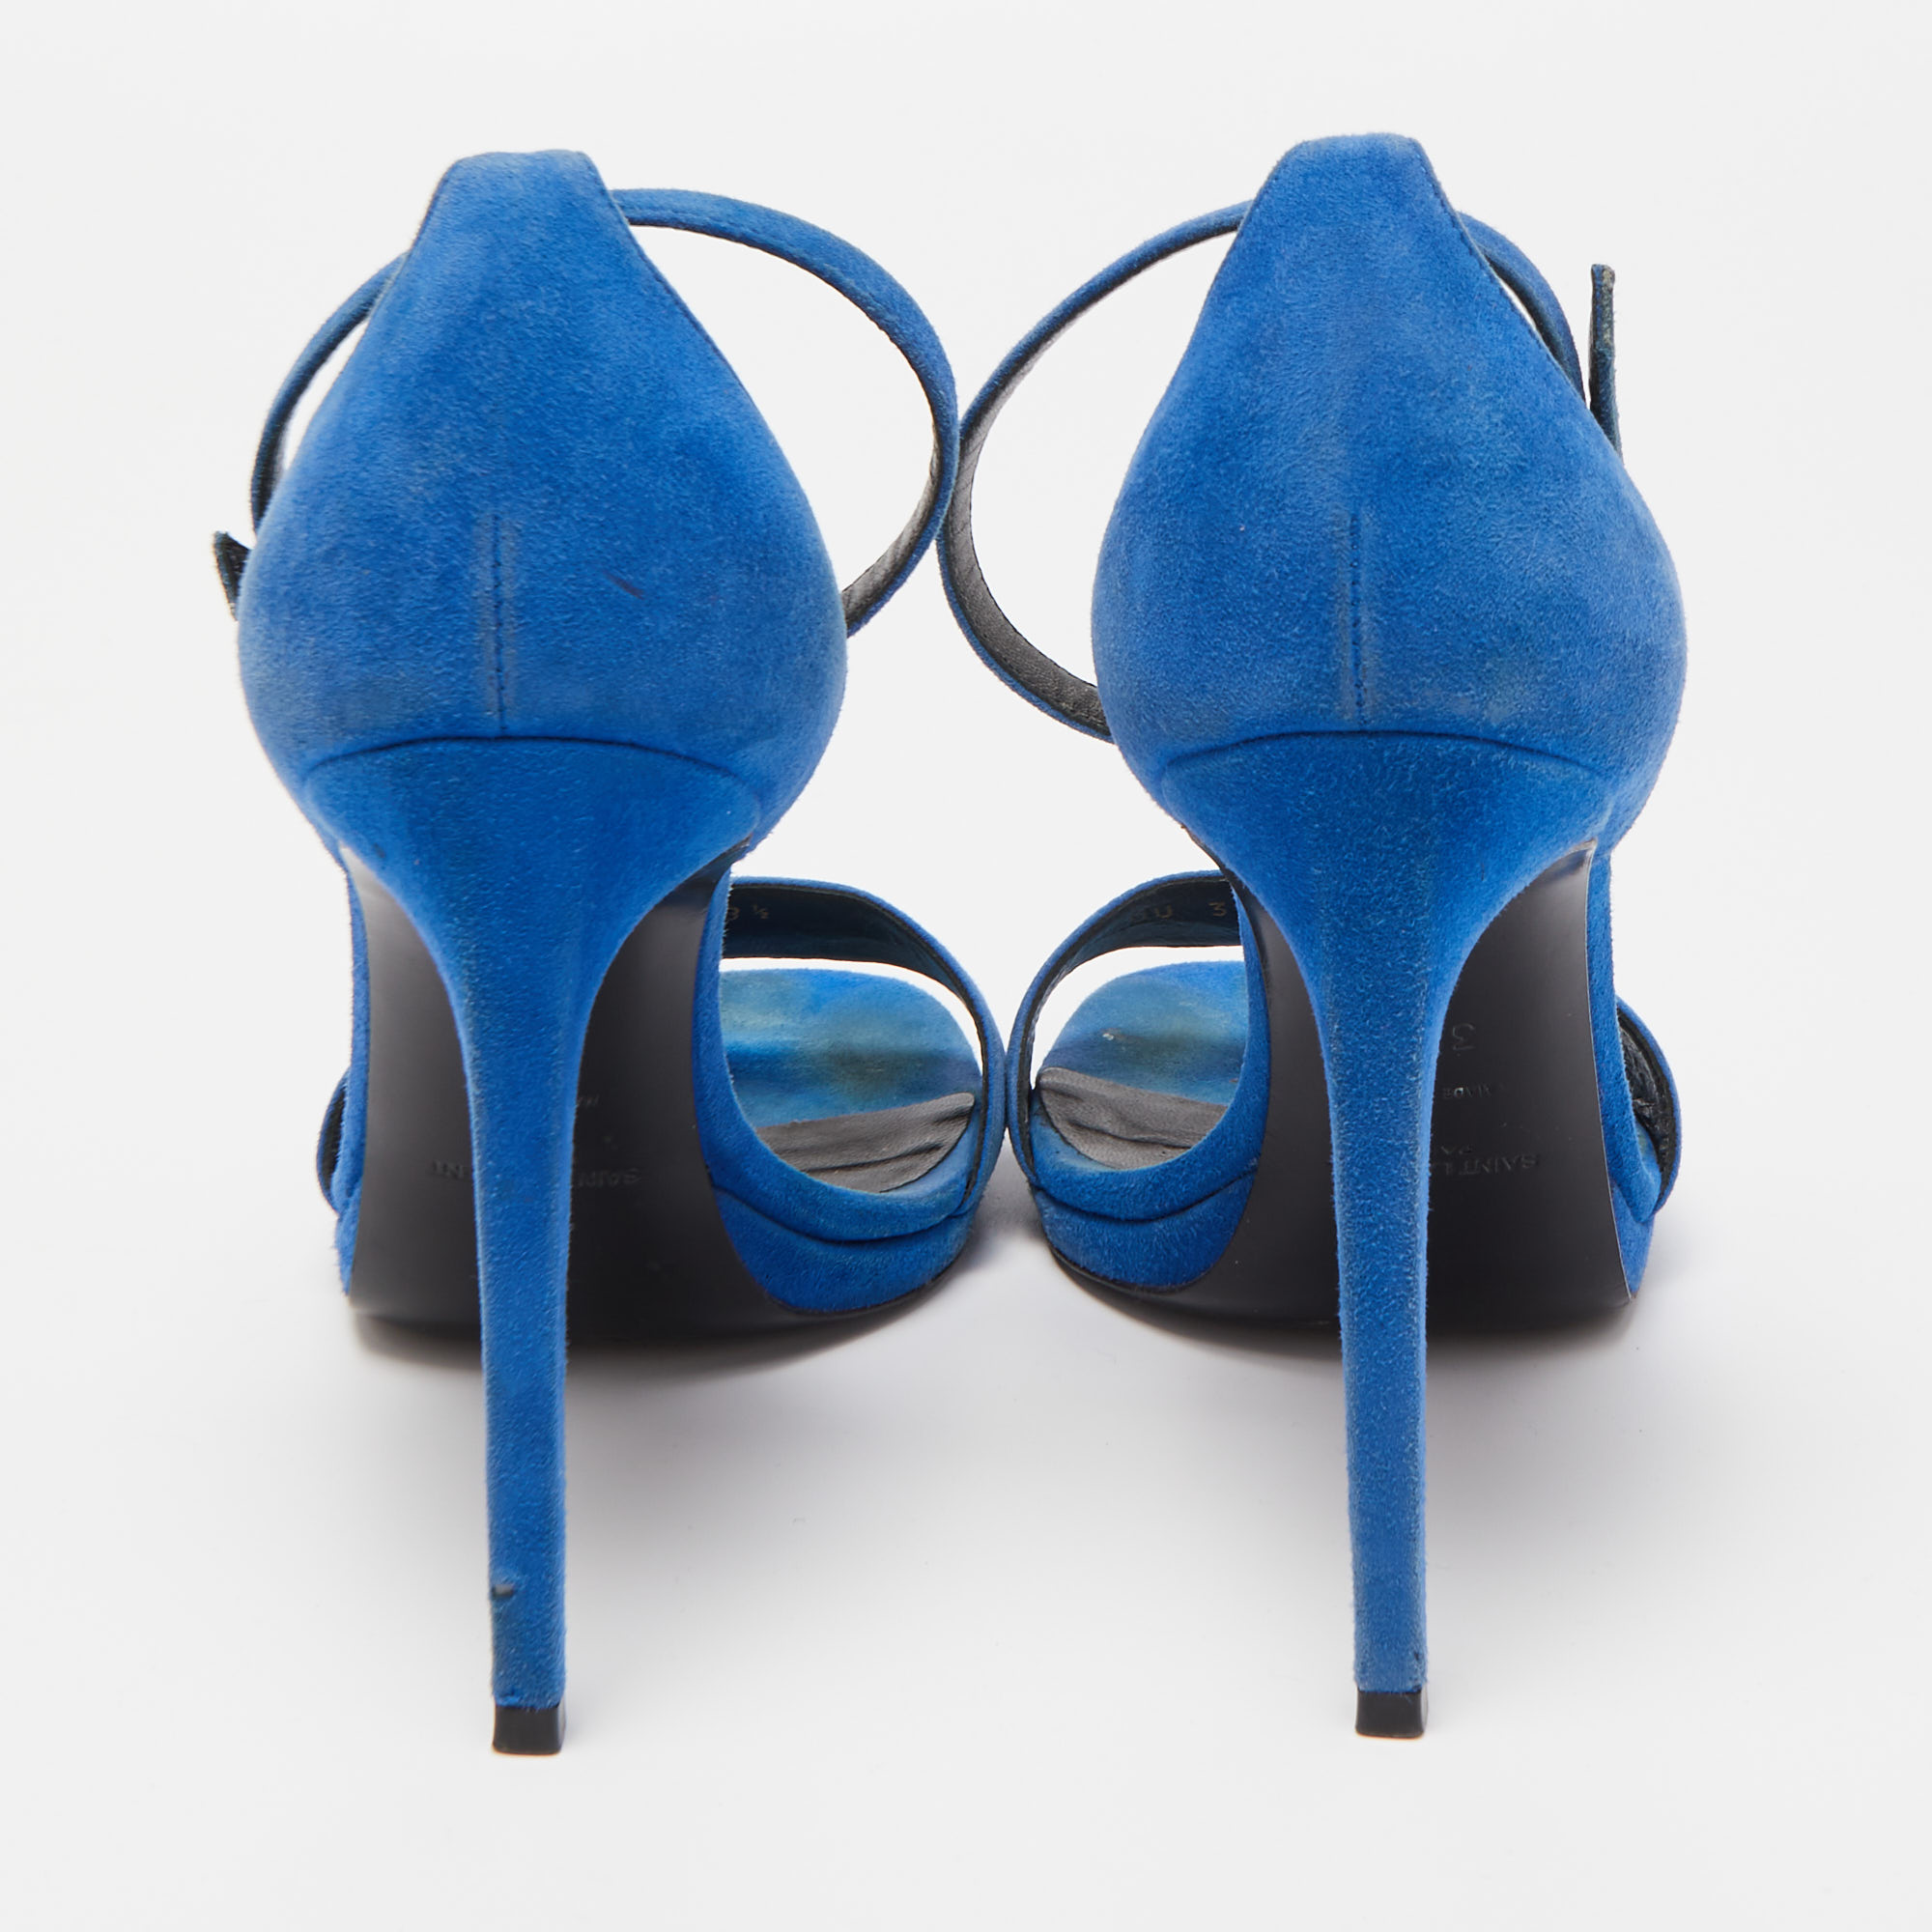 Saint Laurent Blue Suede Jane Sandals Size 38.5